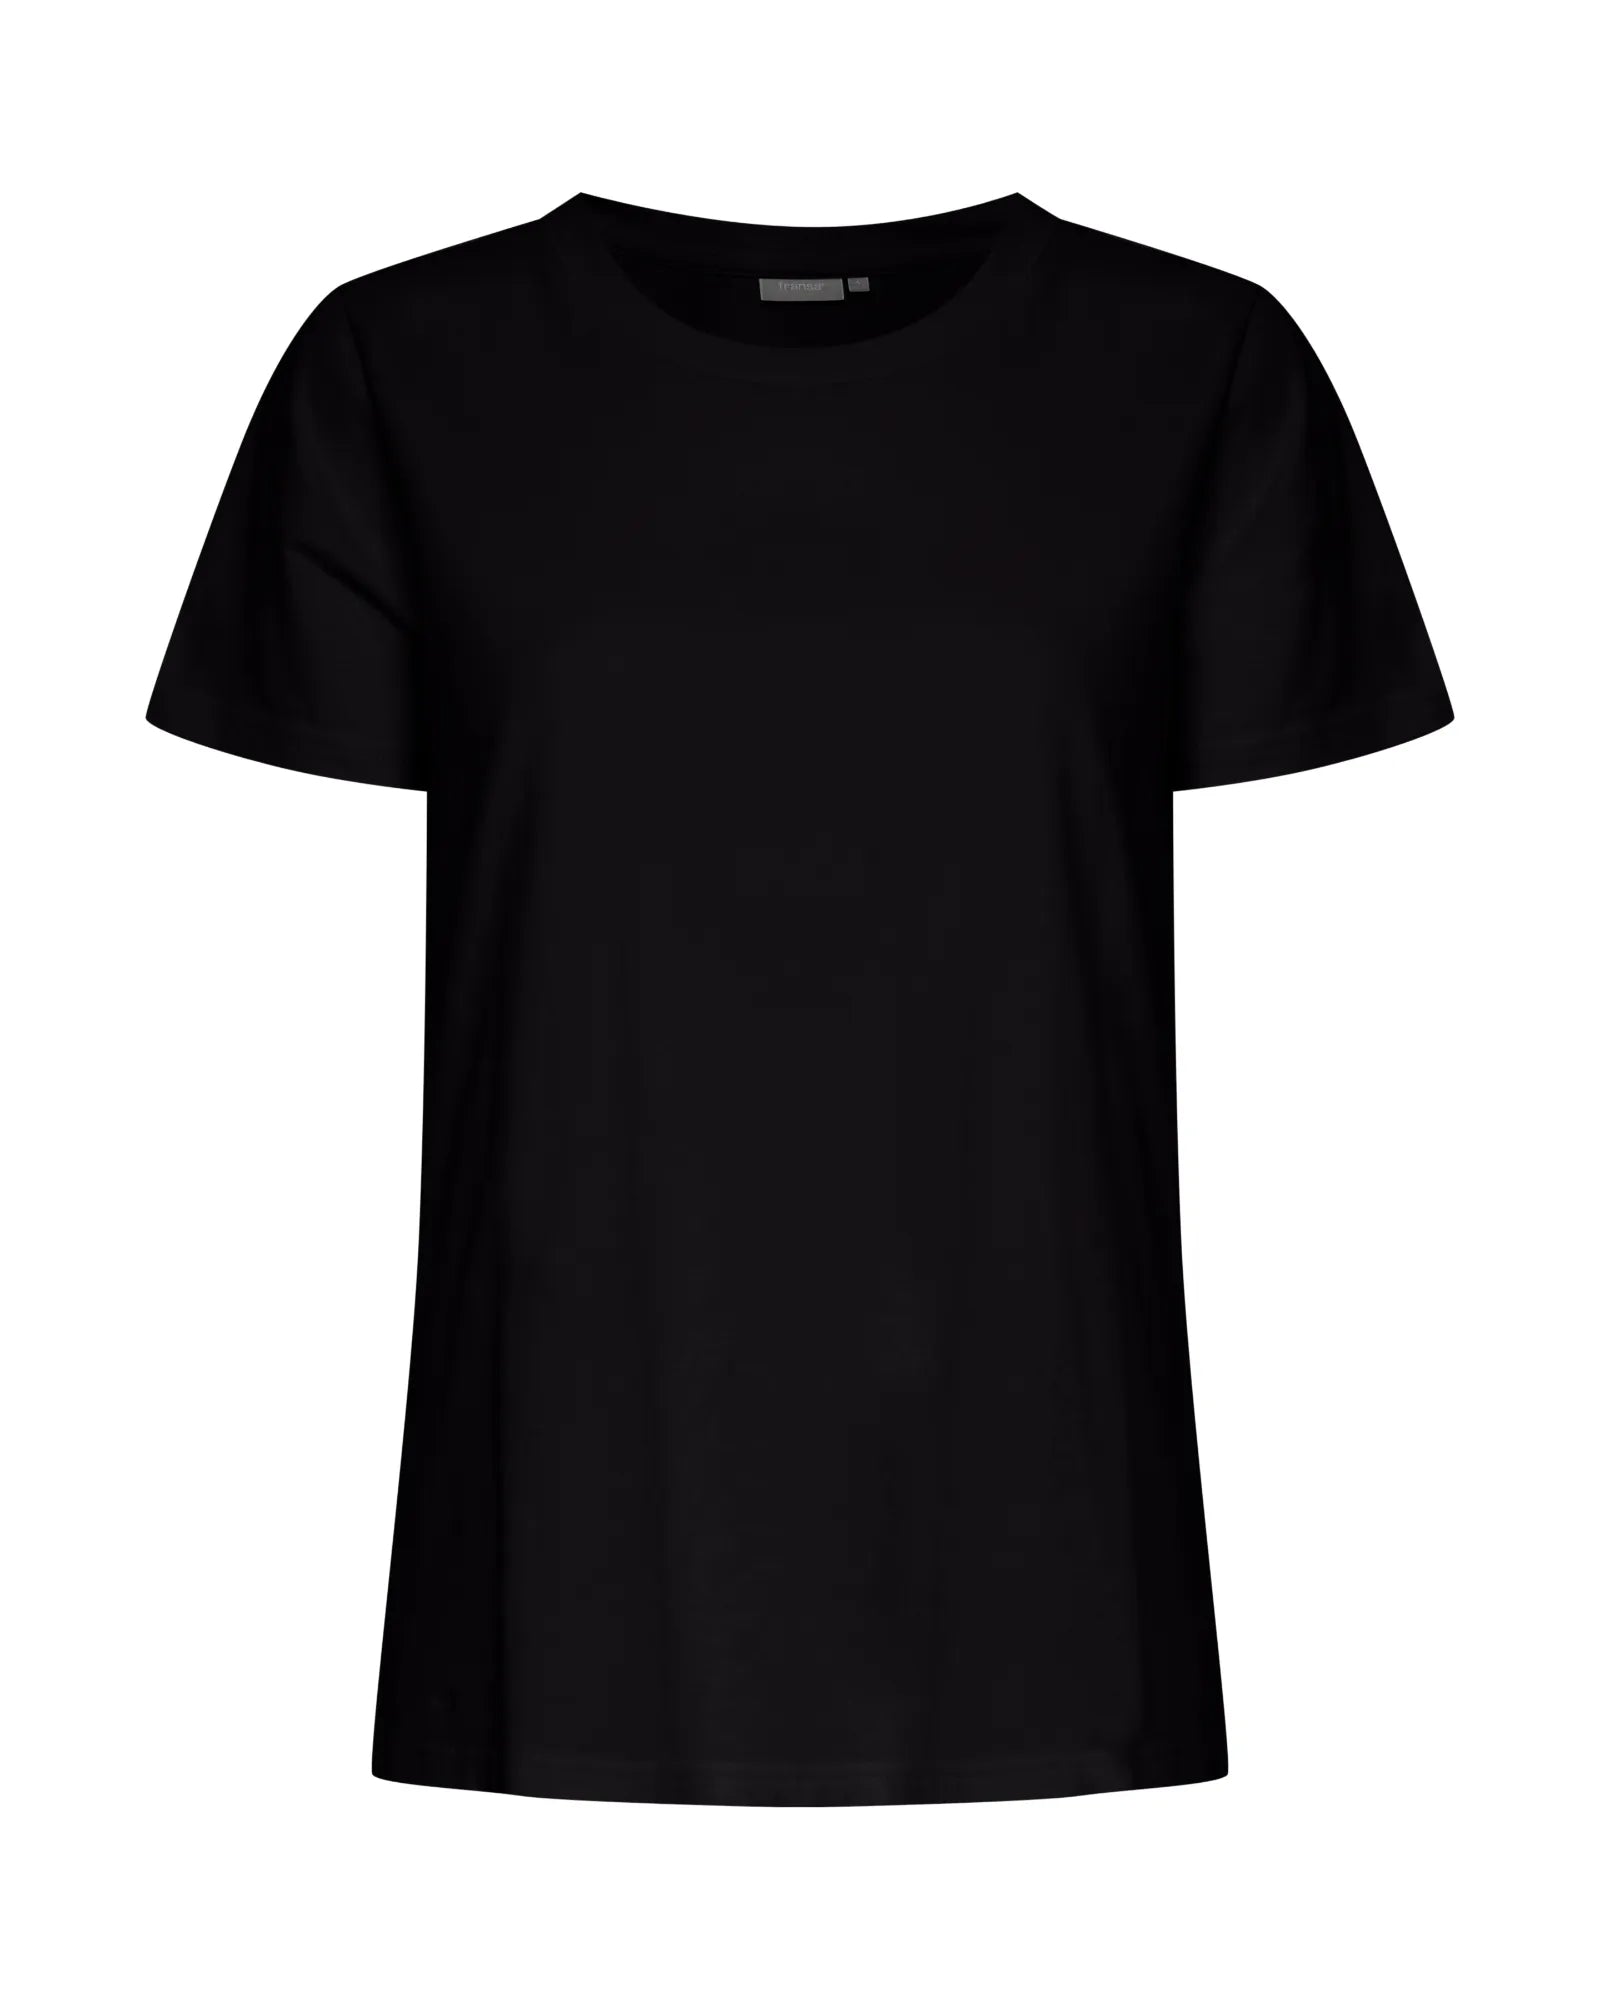 Zashoulder T-Shirt - Black